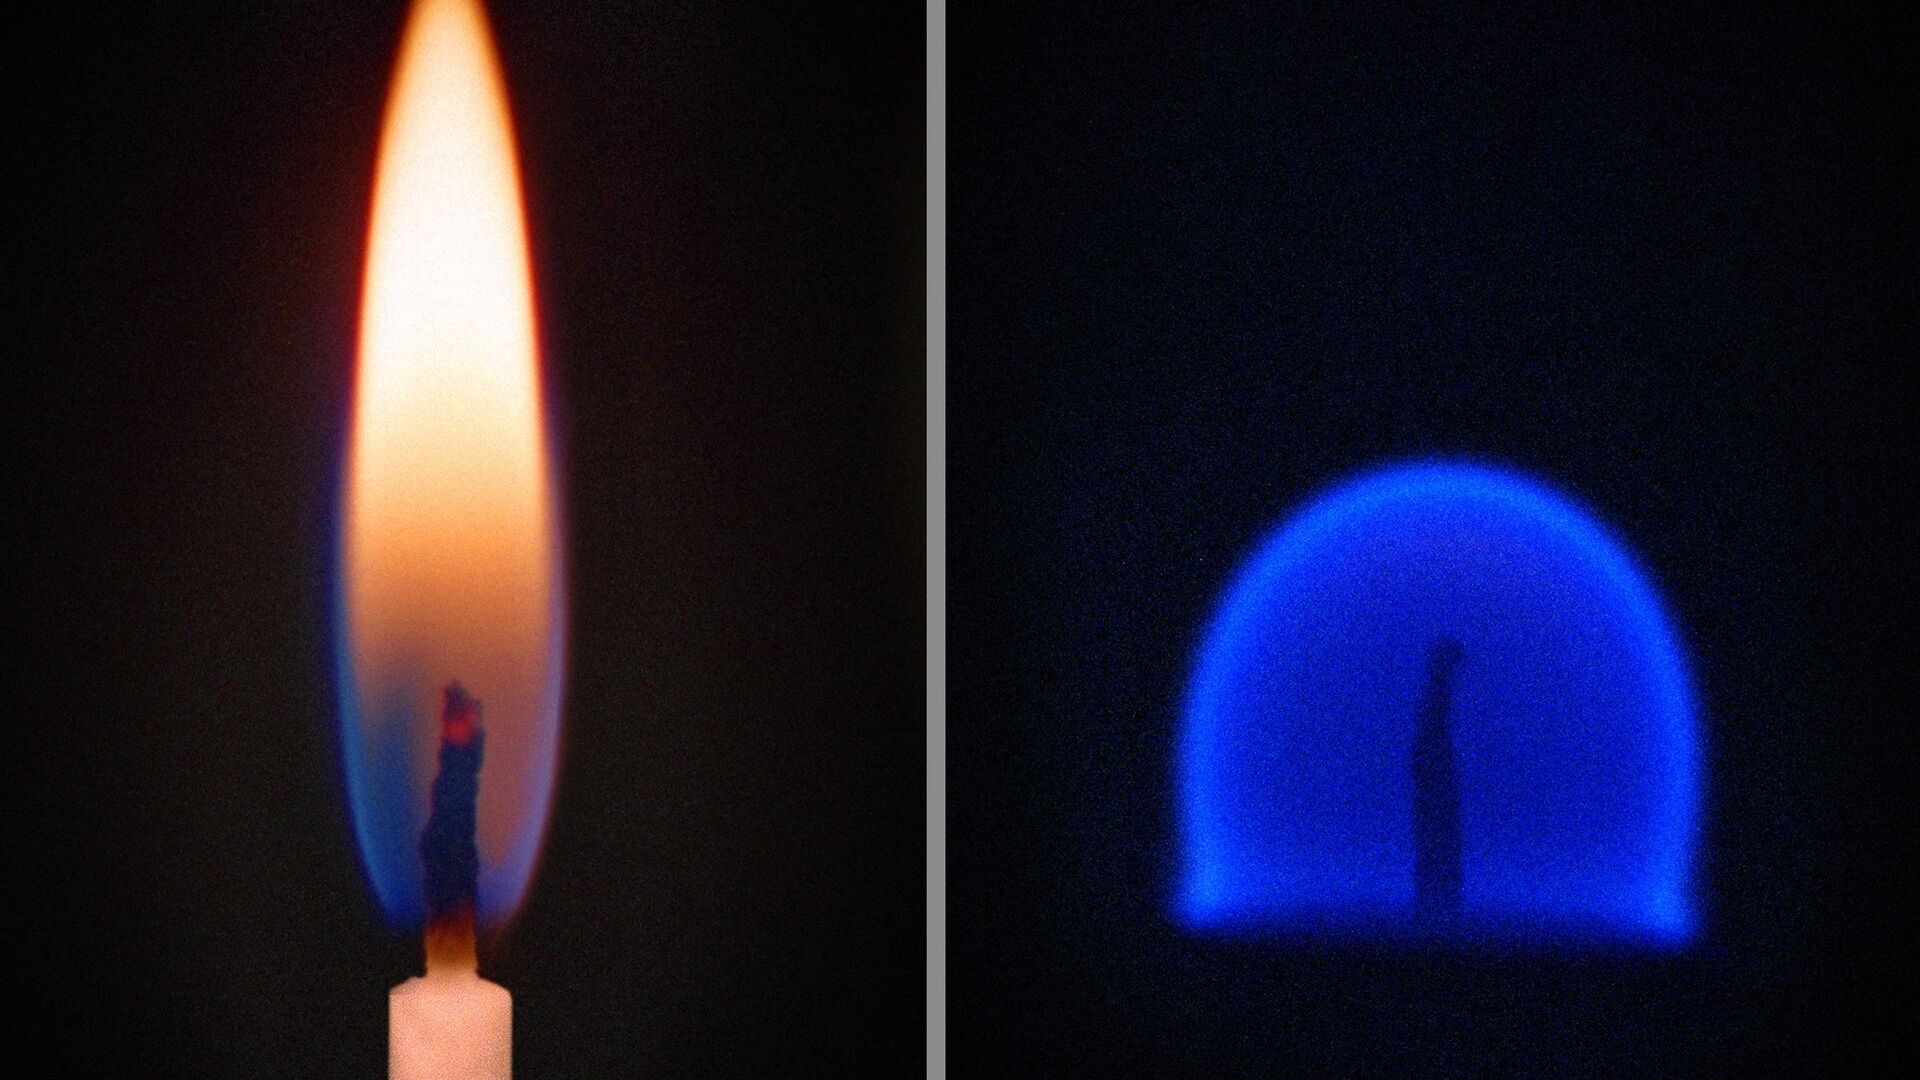 Un confronto tra la combustione di una candela sul pianeta Terra, a sinistra, e quella in un ambiente di caduta libera, come quello della Stazione Spaziale Internazionale, a destra